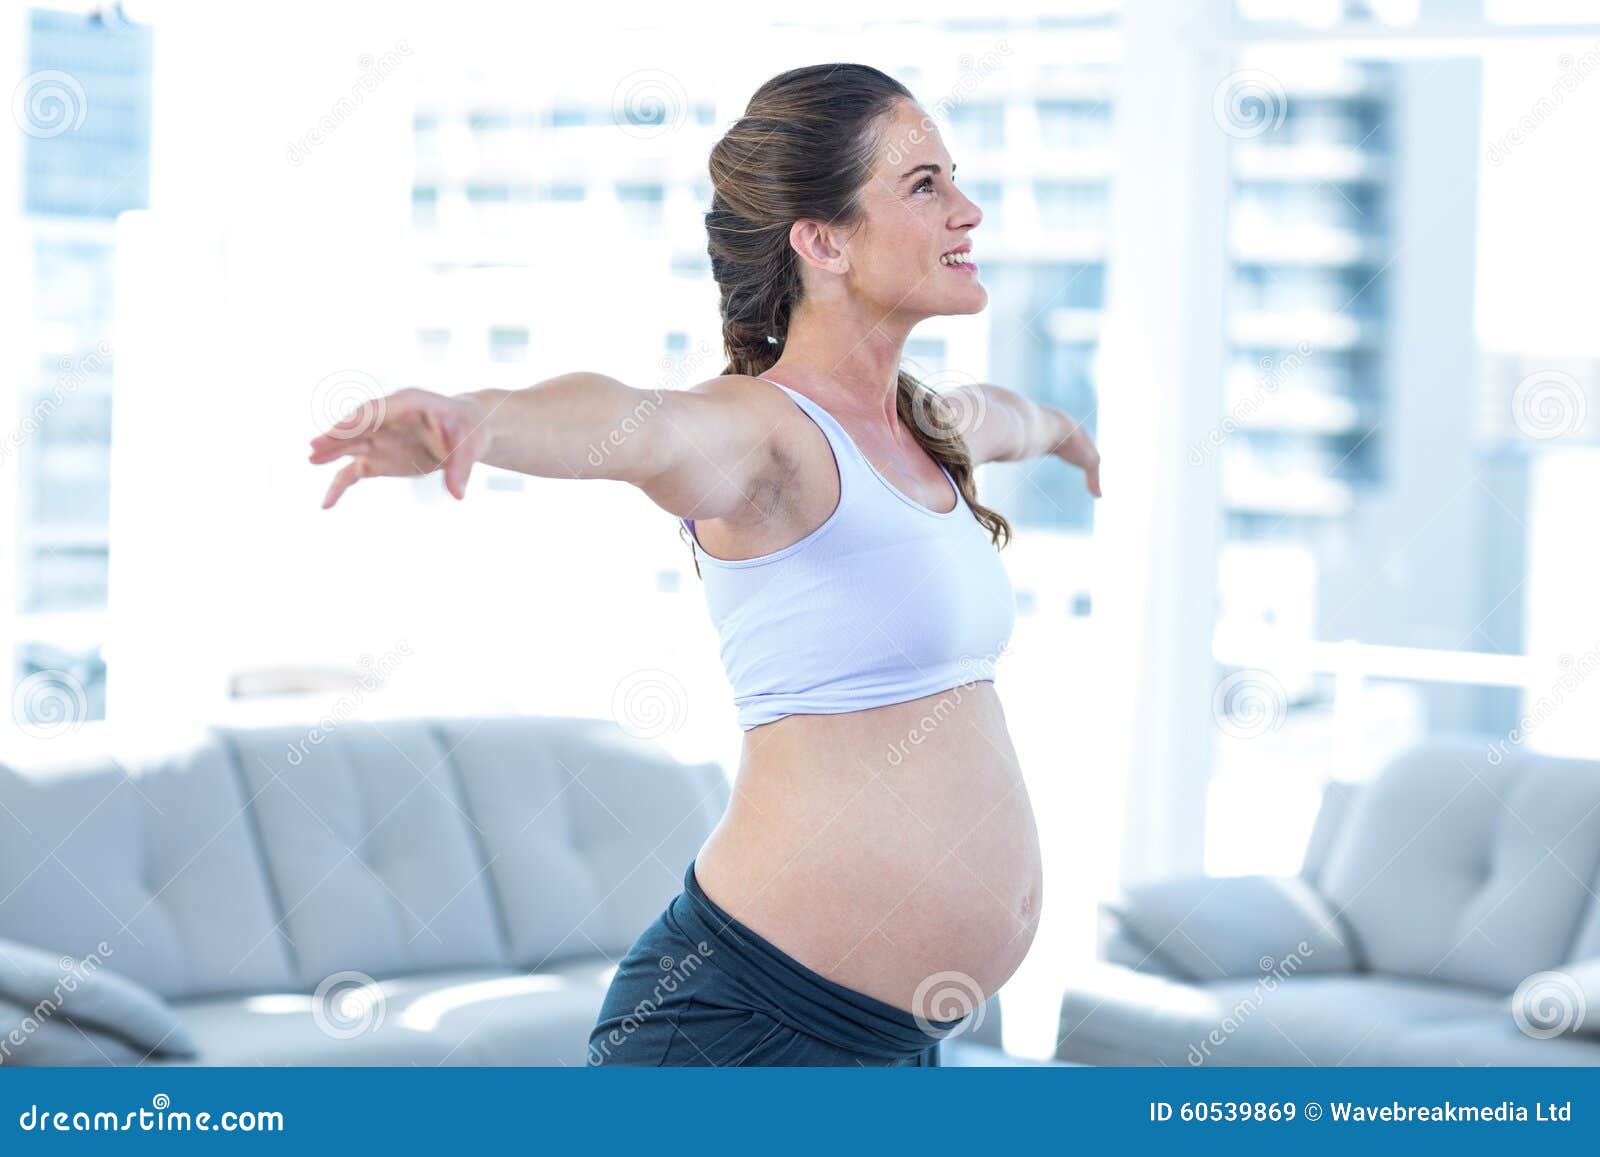 грудь может перестать болеть в первом триместре беременности фото 119